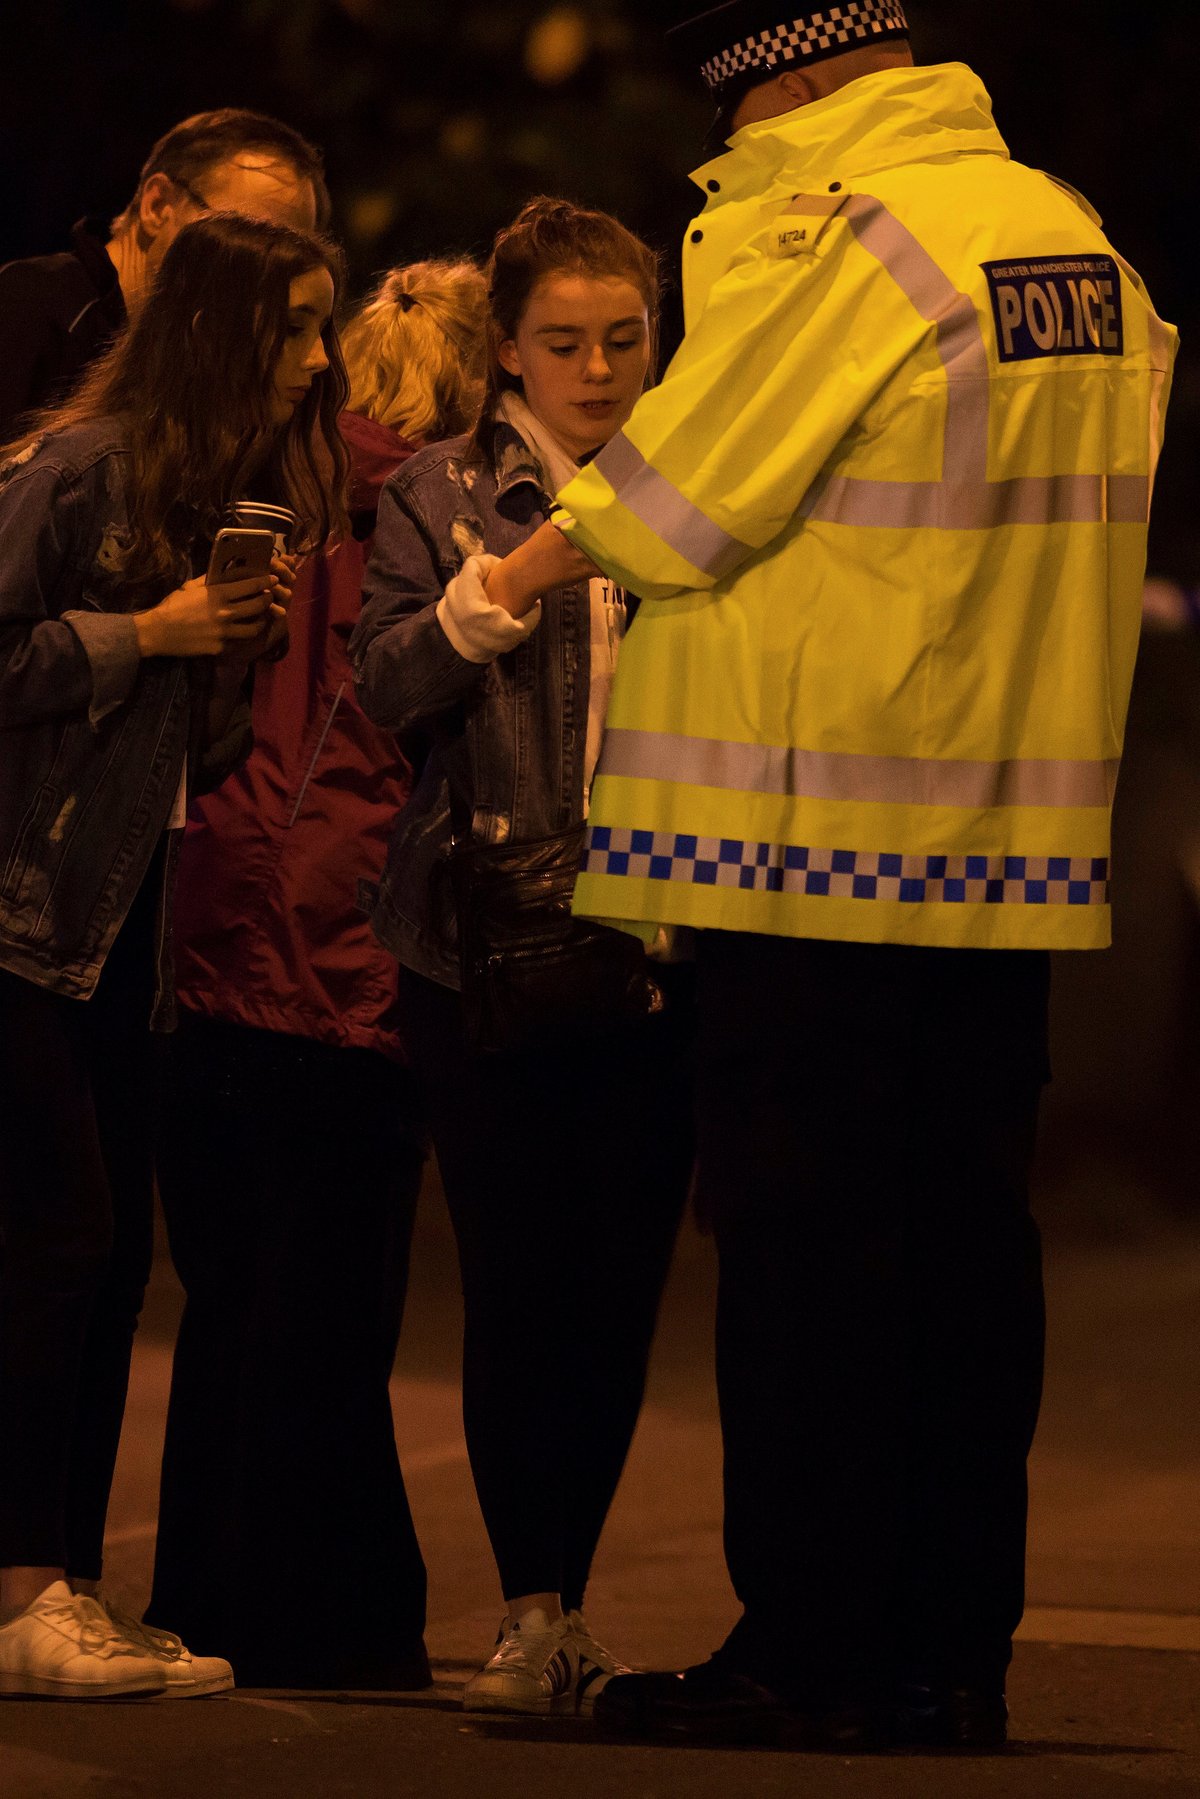 Teror v Manchesteru: Exploze v multifunkční hale si vyžádala řadu mrtvých